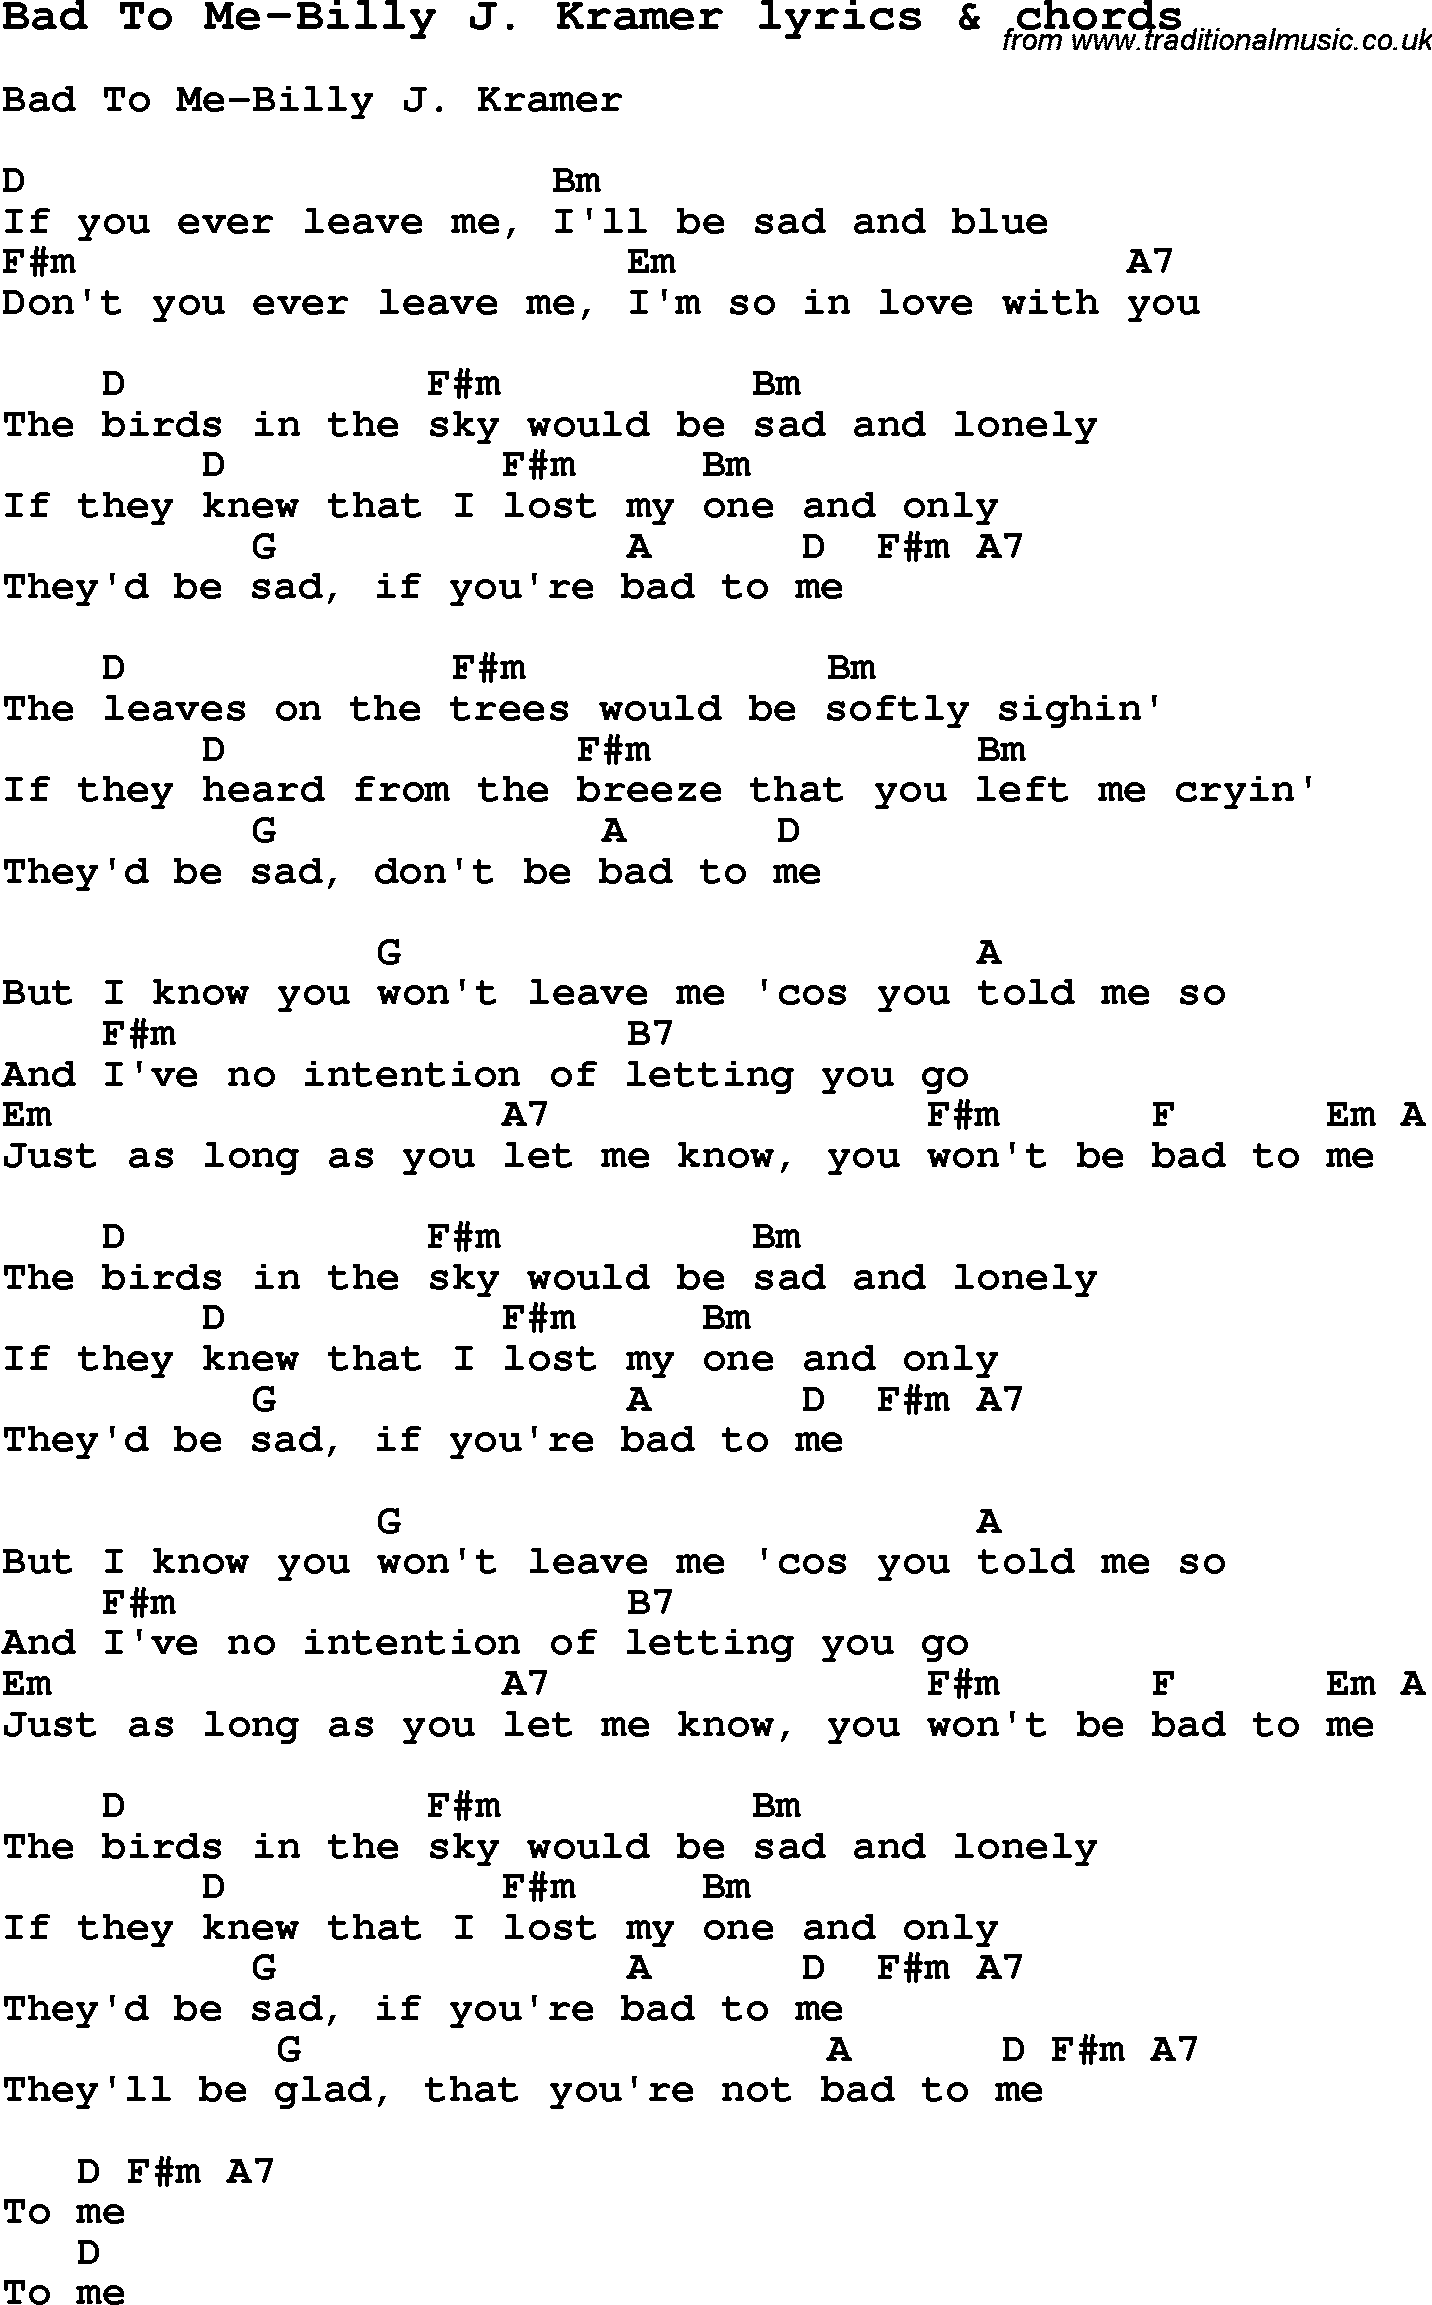 Love Song Lyrics for: Bad To Me-Billy J. Kramer with chords for Ukulele, Guitar Banjo etc.